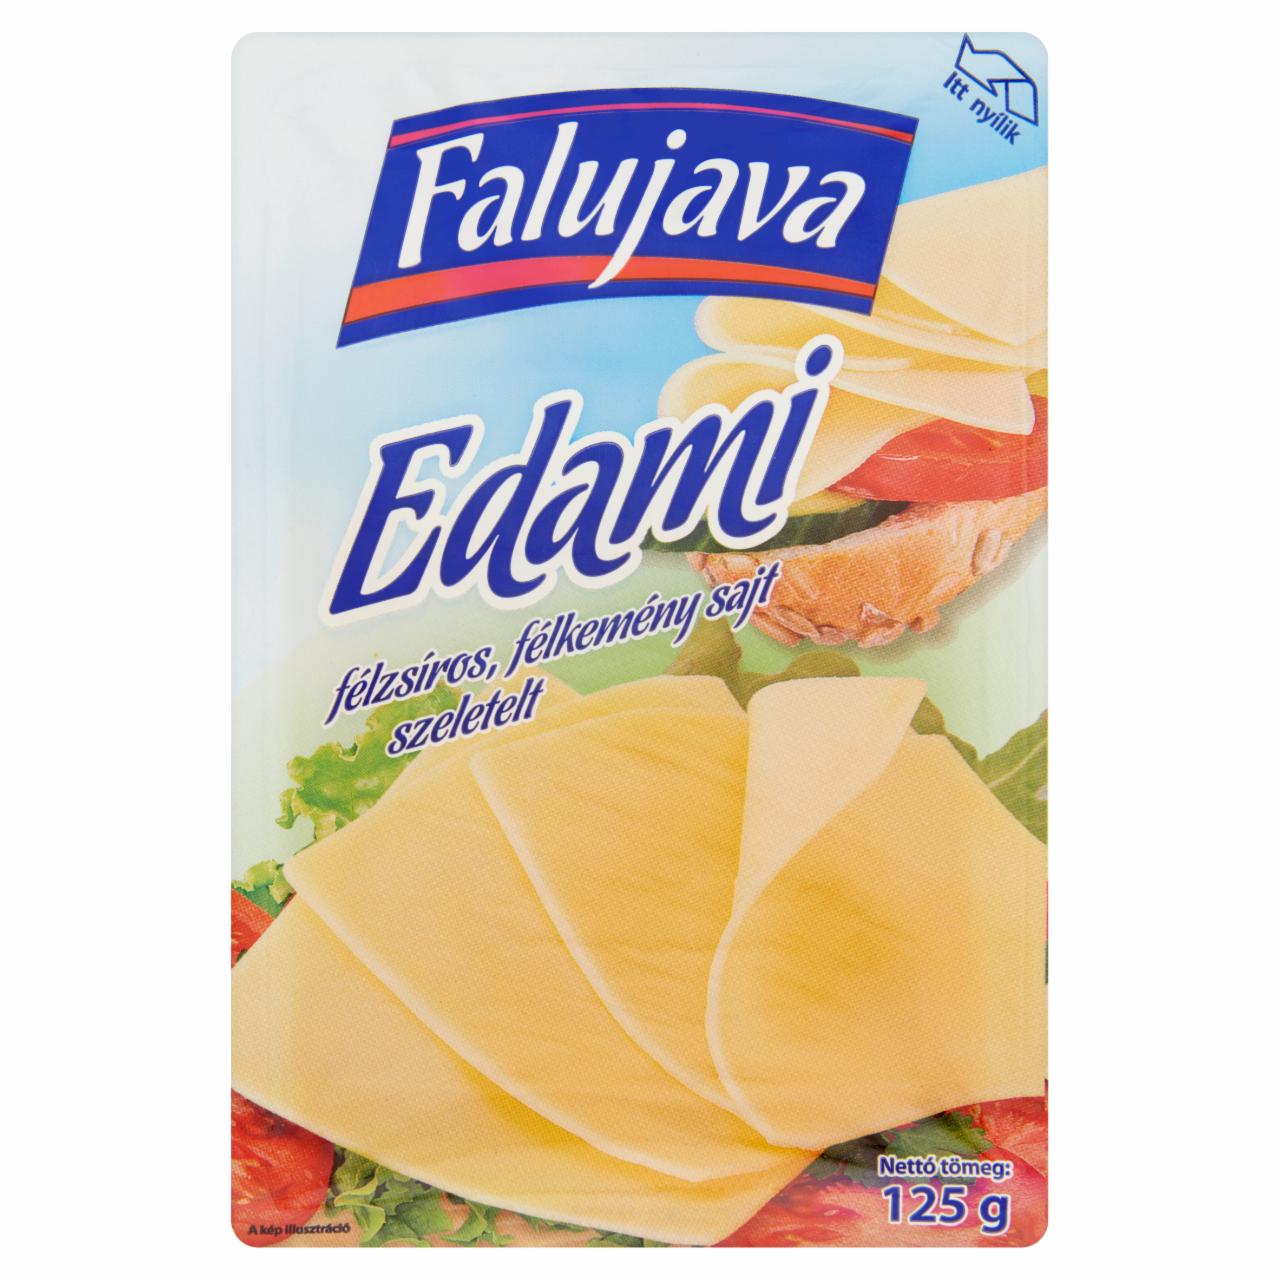 Képek - Falujava félzsíros, félkemény szeletelt edami sajt 125 g